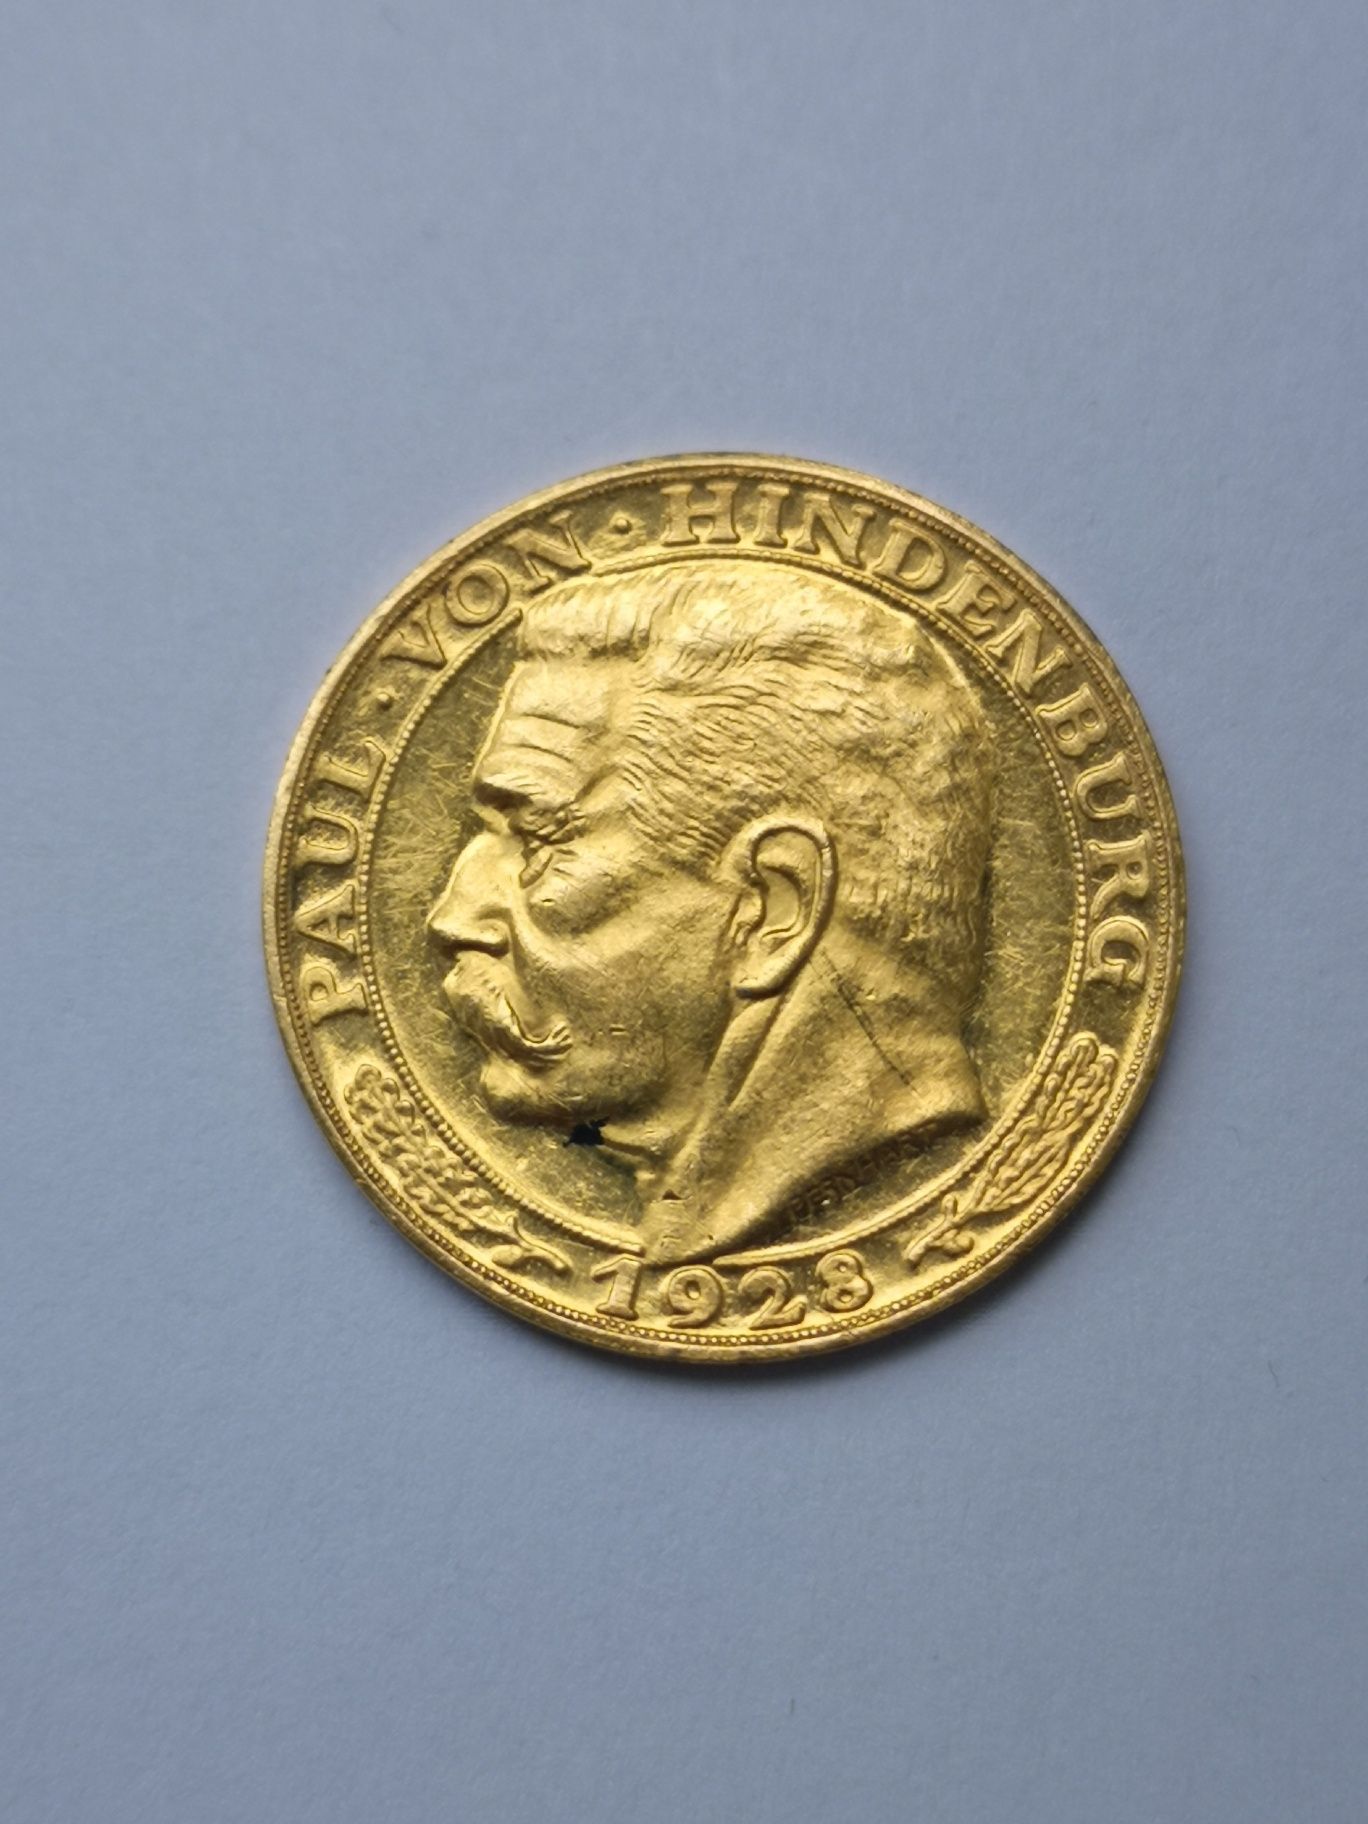 Niemcy Republika weimarska medal złoto 900 Paul von Hindenburg rzadki